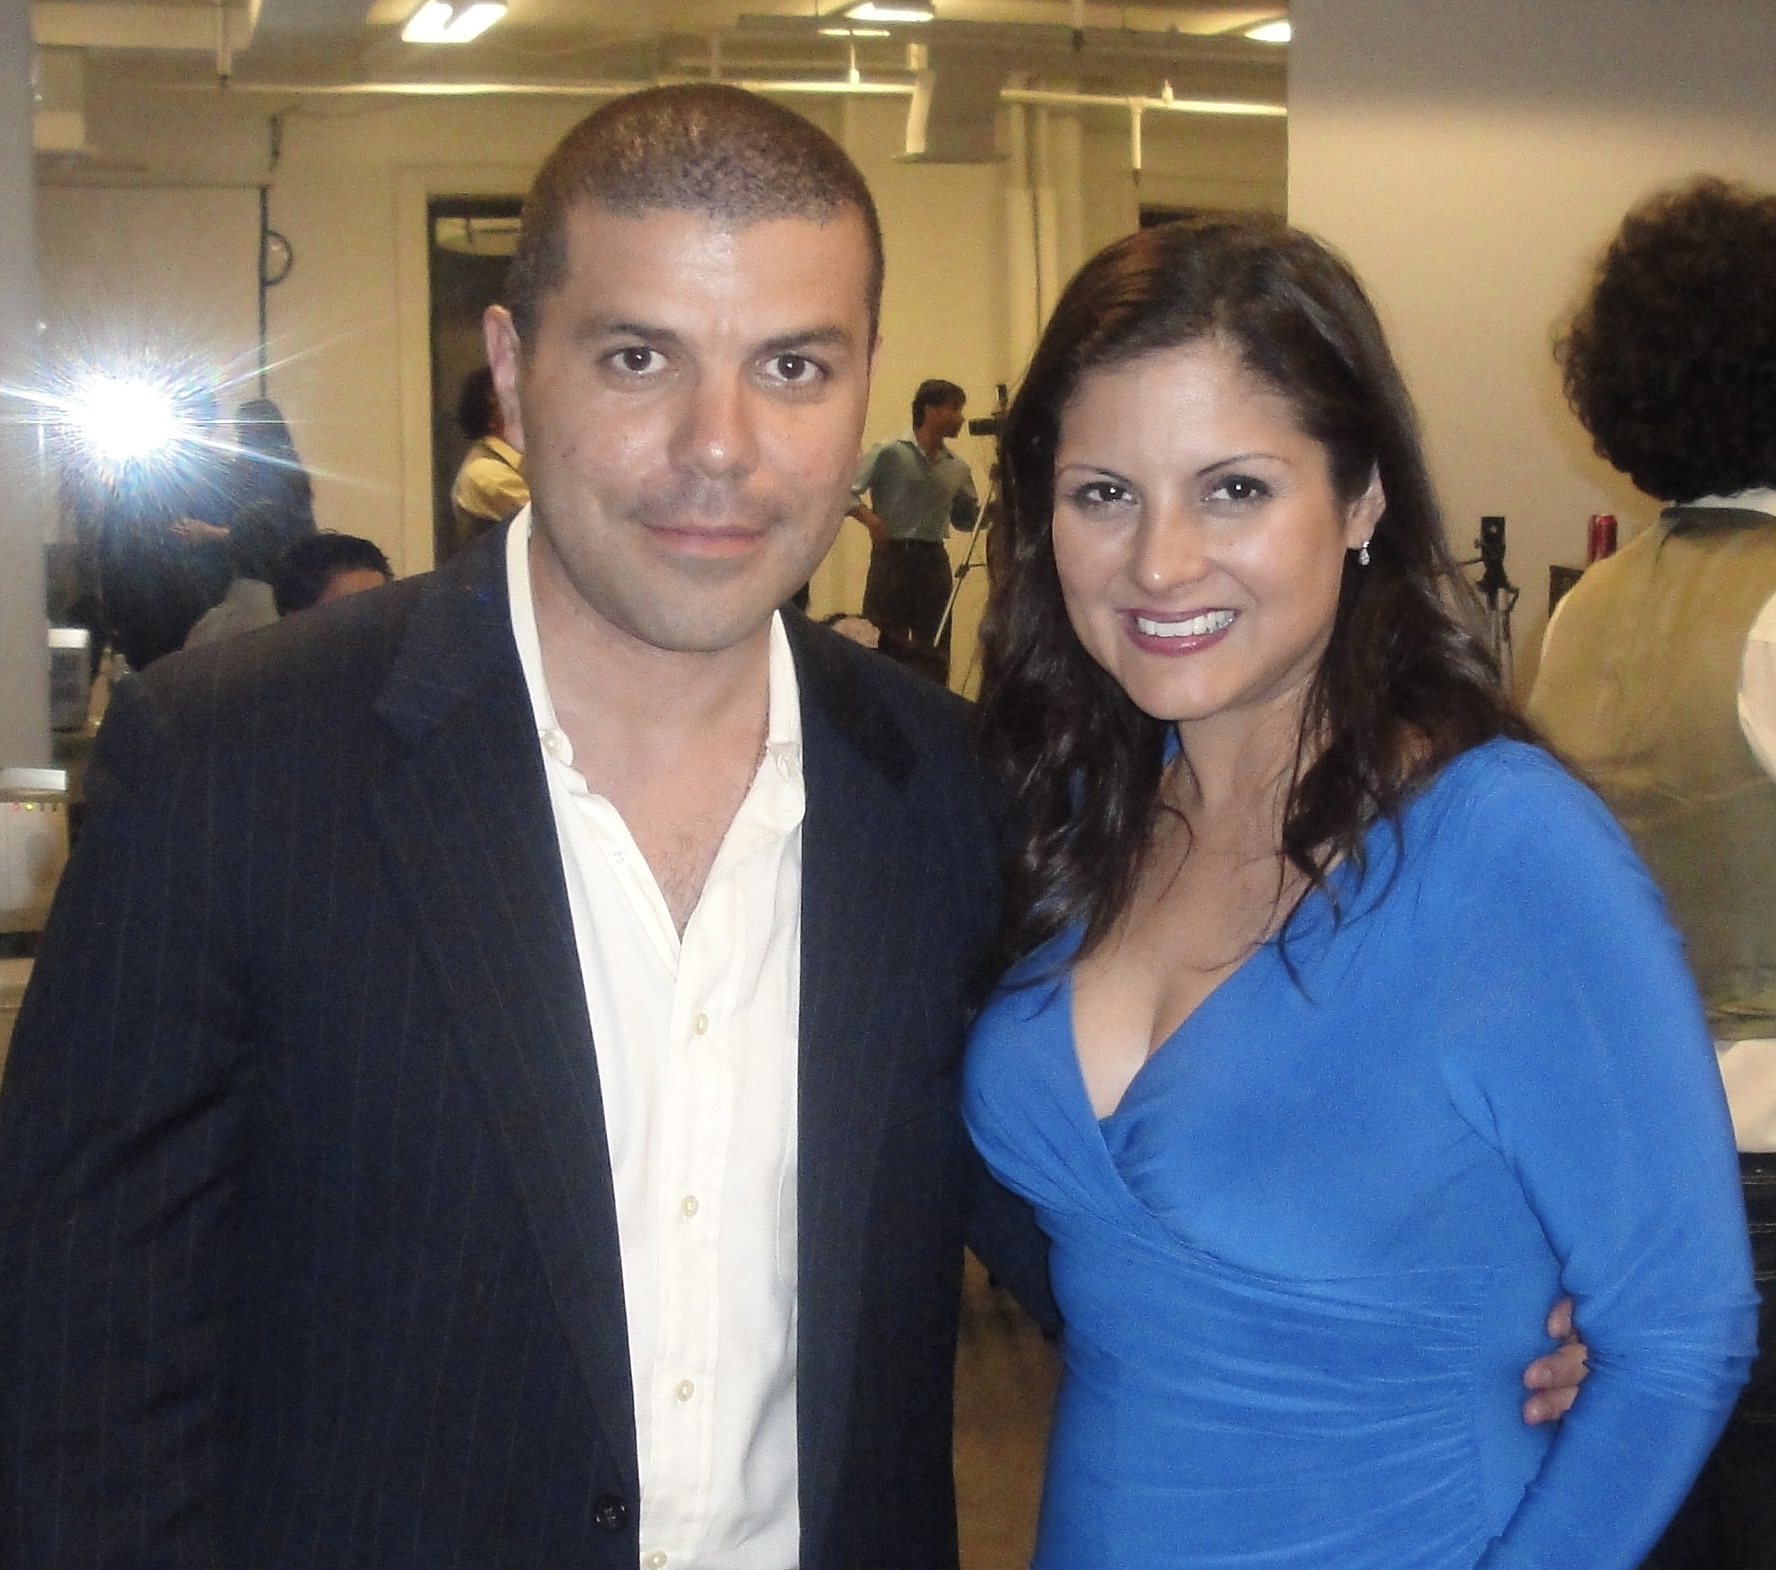 With Andrea Romero from Telemundo